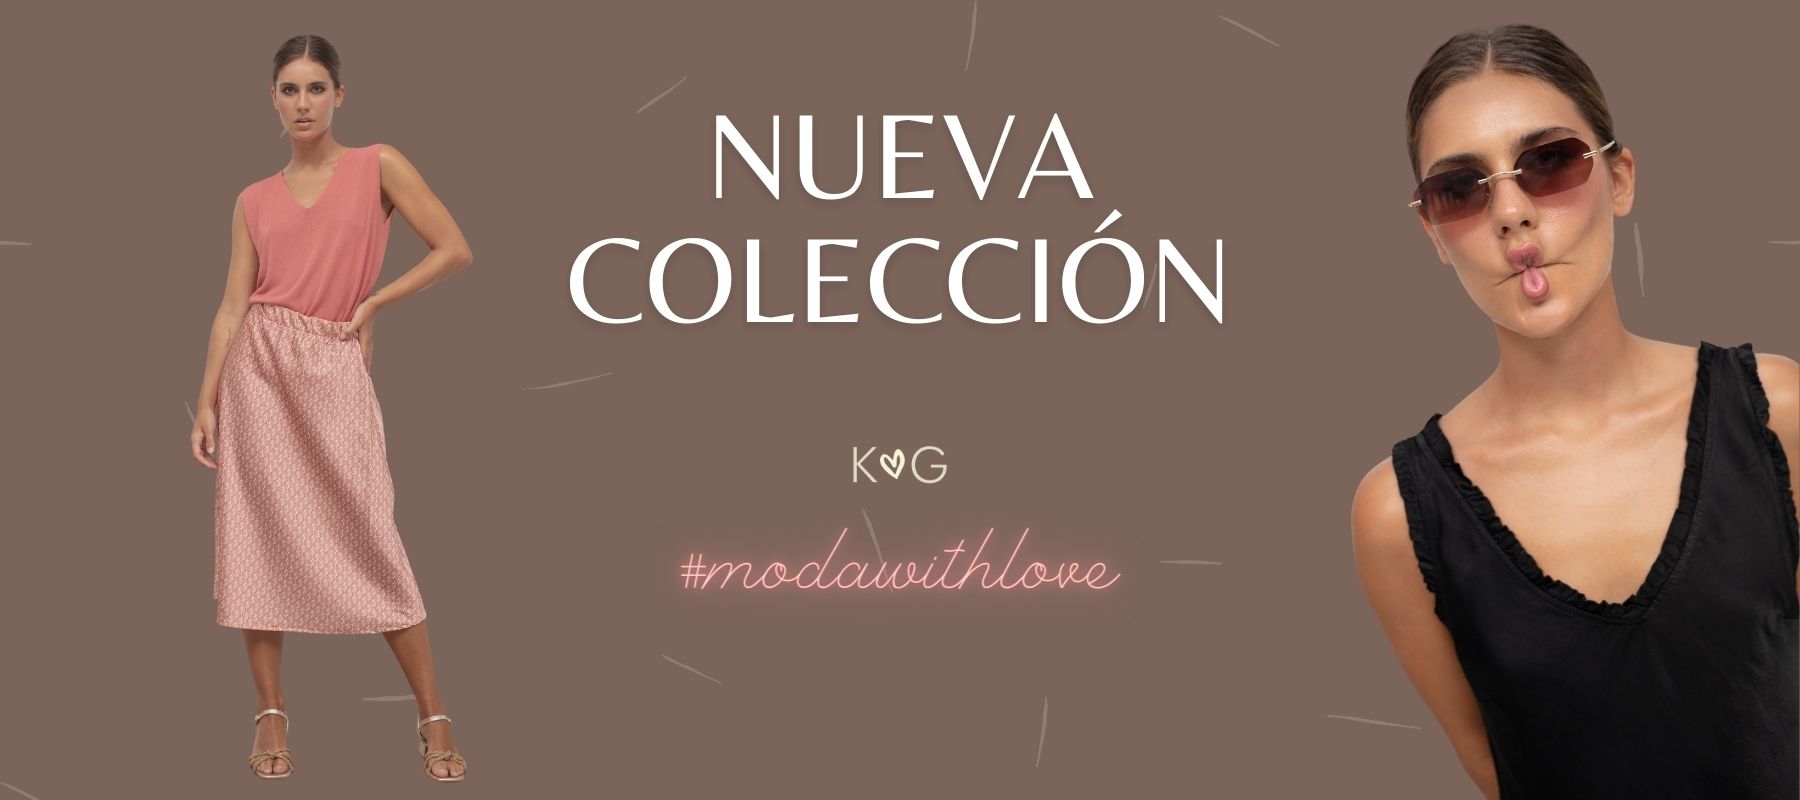 Nueva Colección con mucho #withlove